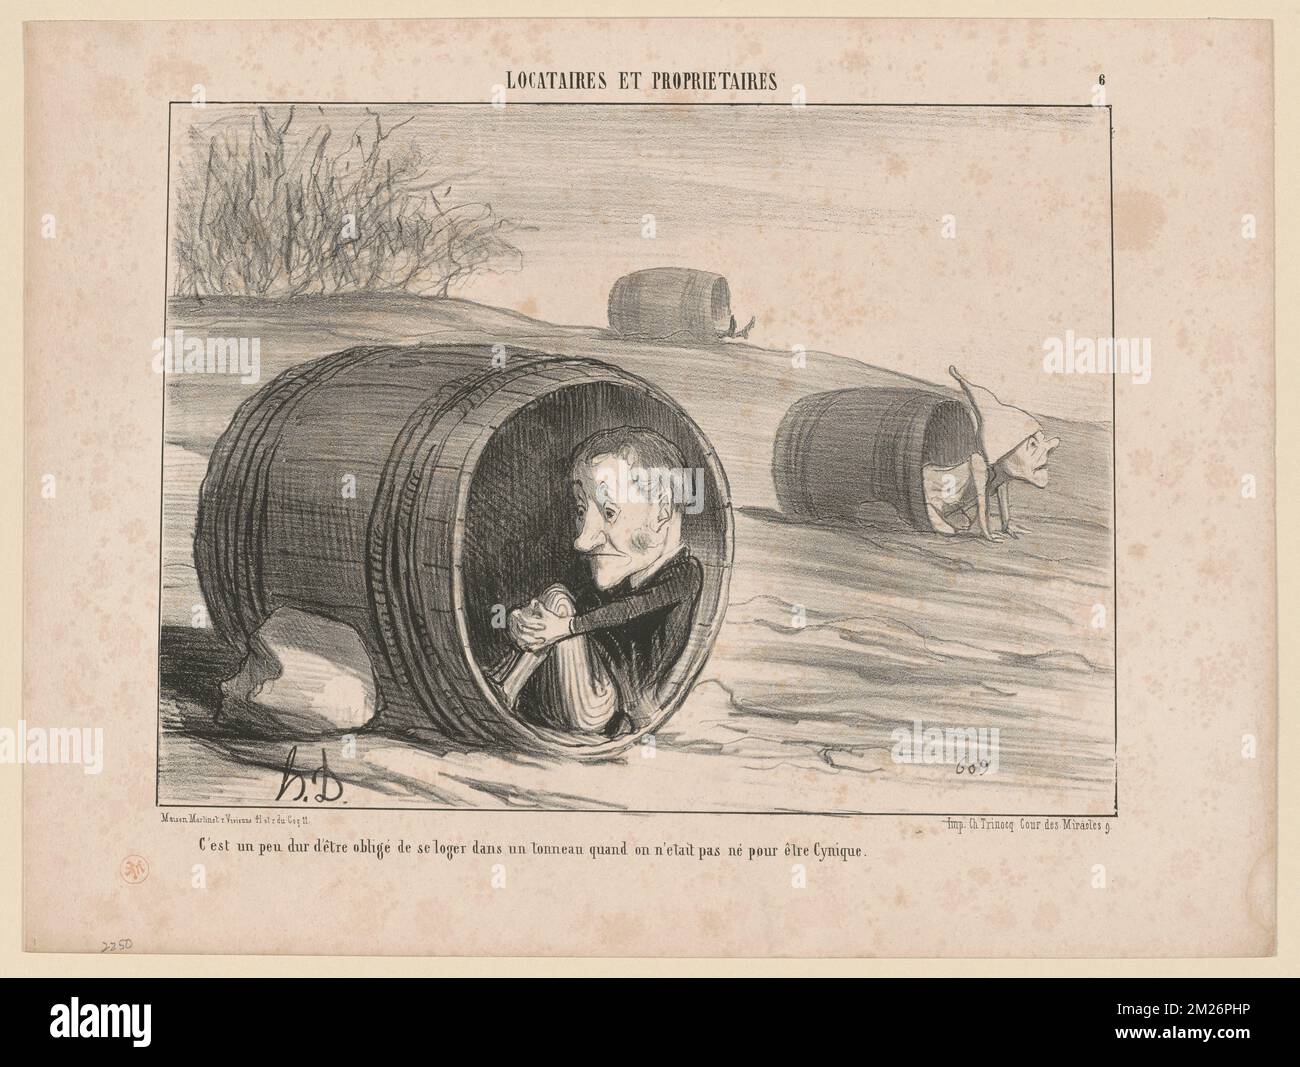 C'est un peu dur d'être obligé.... Honoré Daumier (1808-1879). Litografie Foto Stock